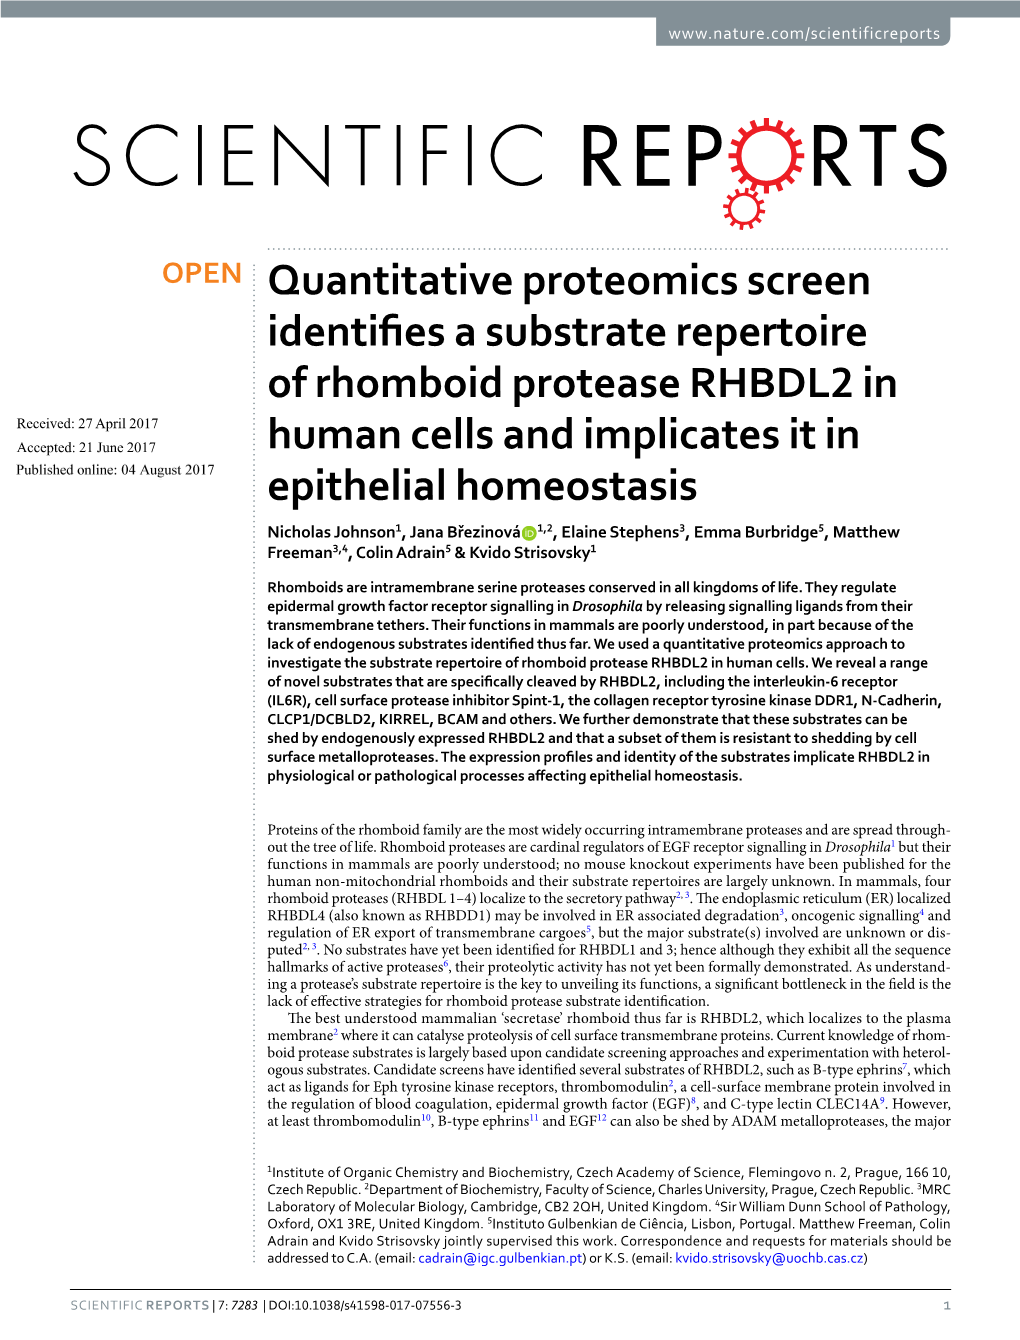 Quantitative Proteomics Screen Identifies a Substrate Repertoire Of